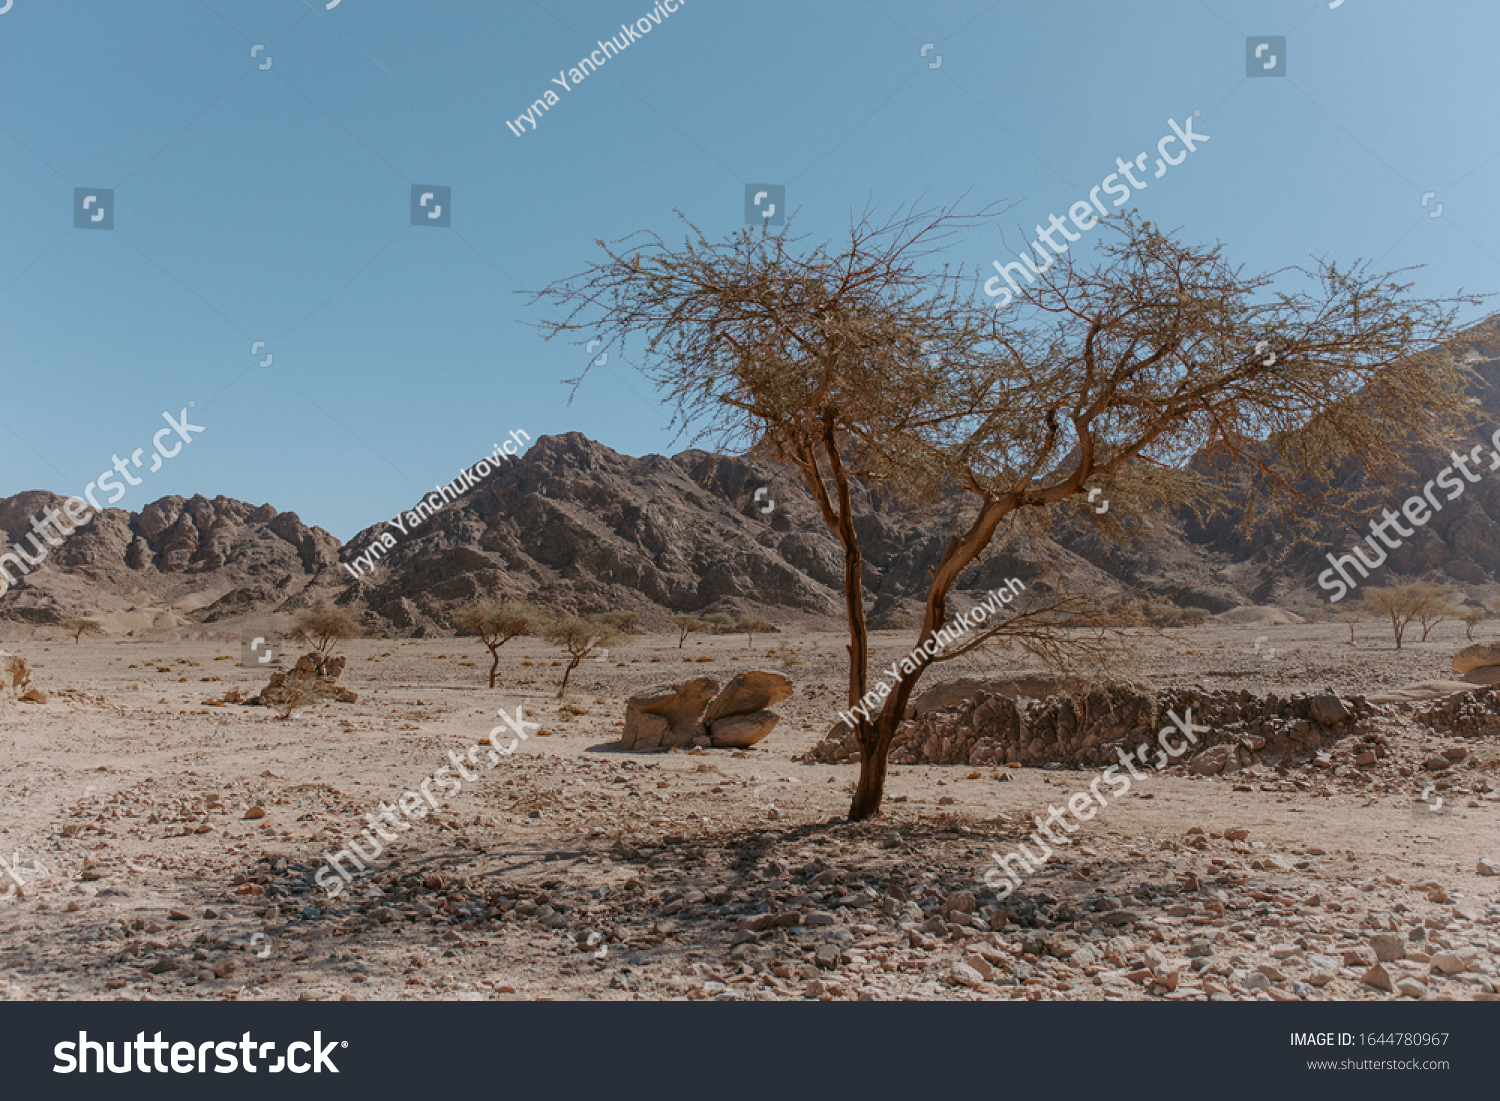 シナイ砂漠の木と山 エジプト シャルム エル シェイク近く の写真素材 今すぐ編集